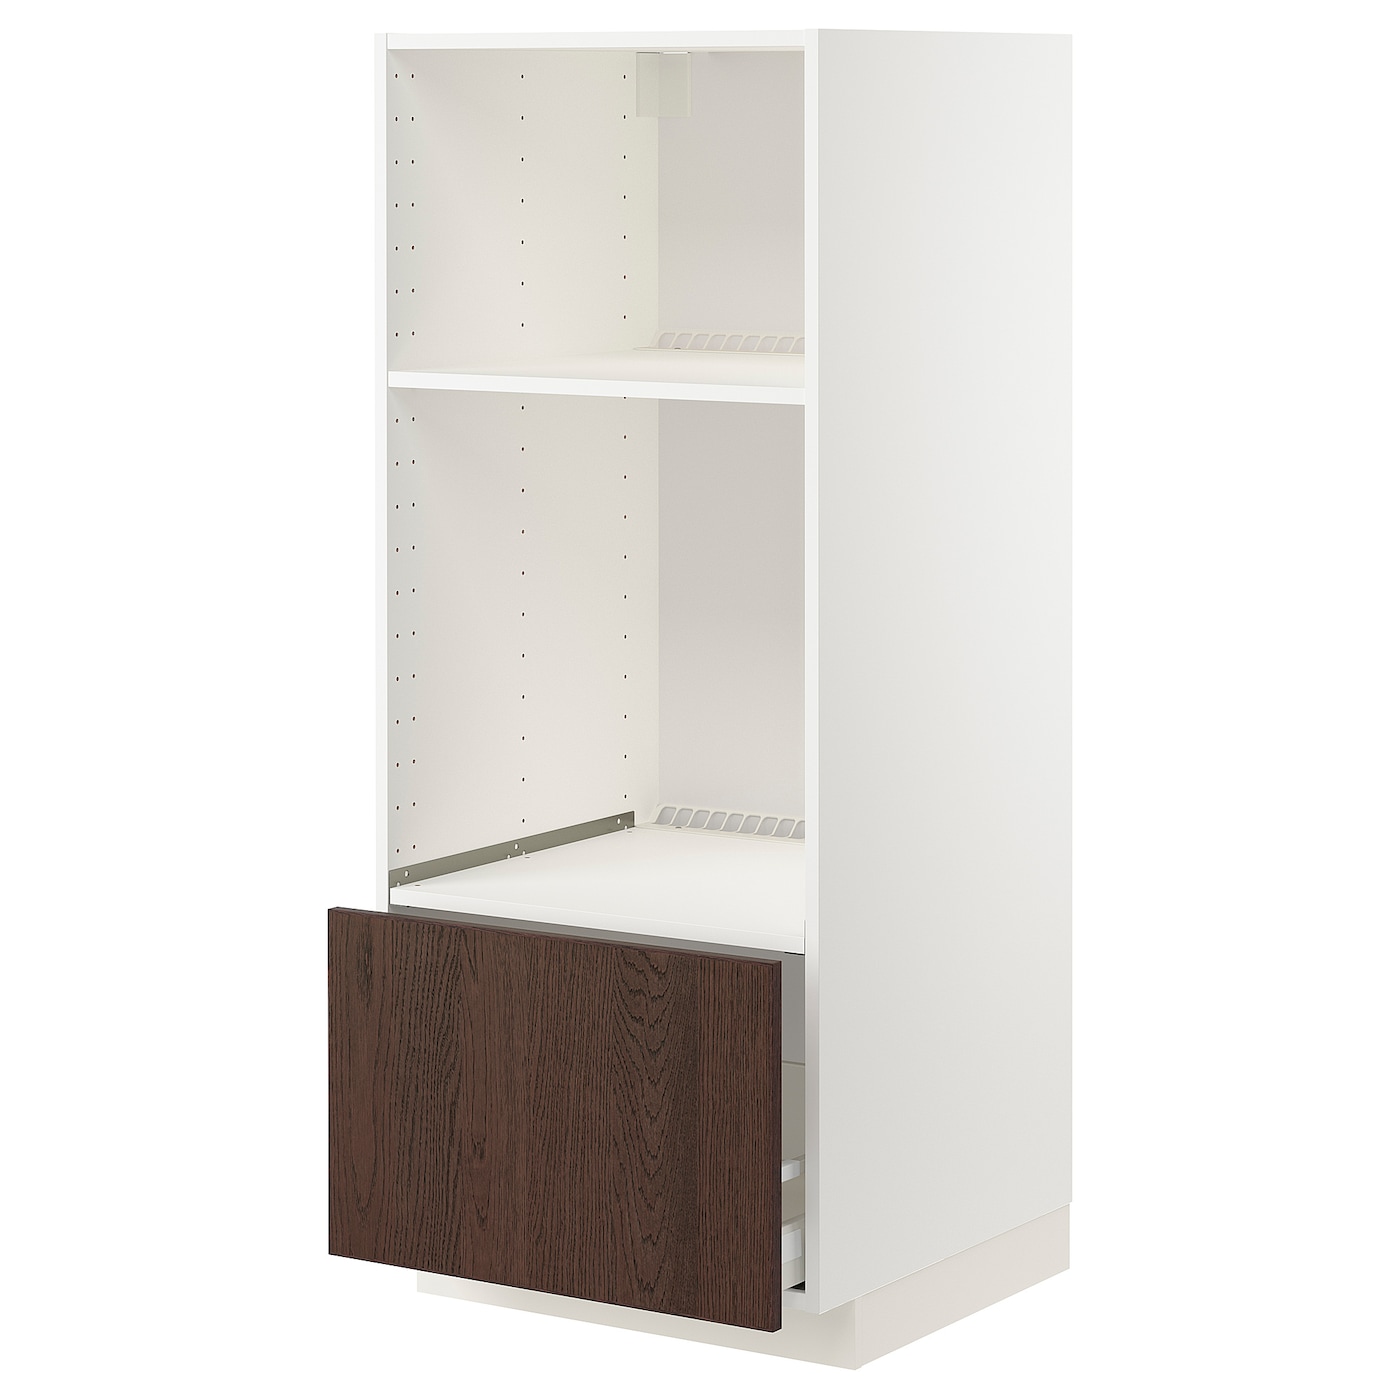 Напольный шкаф  - IKEA METOD MAXIMERA, 148x61,6x60см, белый/коричневый, МЕТОД МАКСИМЕРА ИКЕА